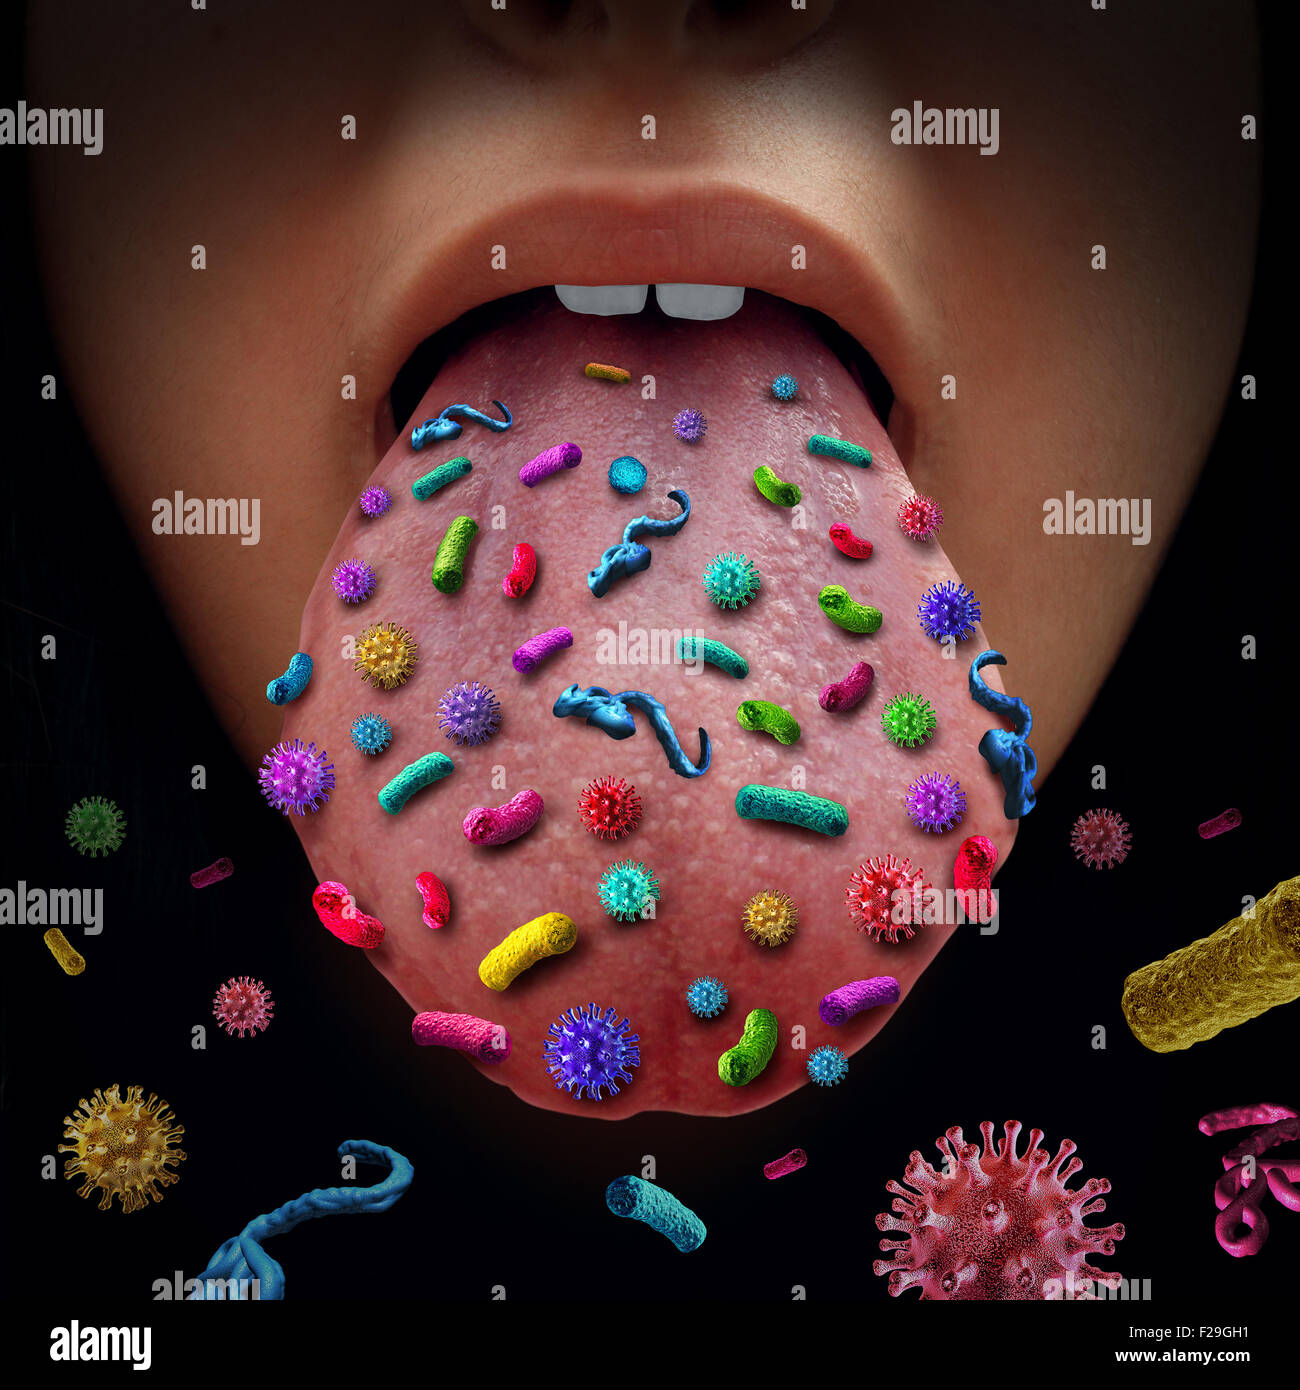 Mund-Keime und ansteckende Krankheit, die Übermittlung einer Virus-Infektion mit offenem menschlichen Mund gefährliche infektiöse Keime verbreiten Stockfoto